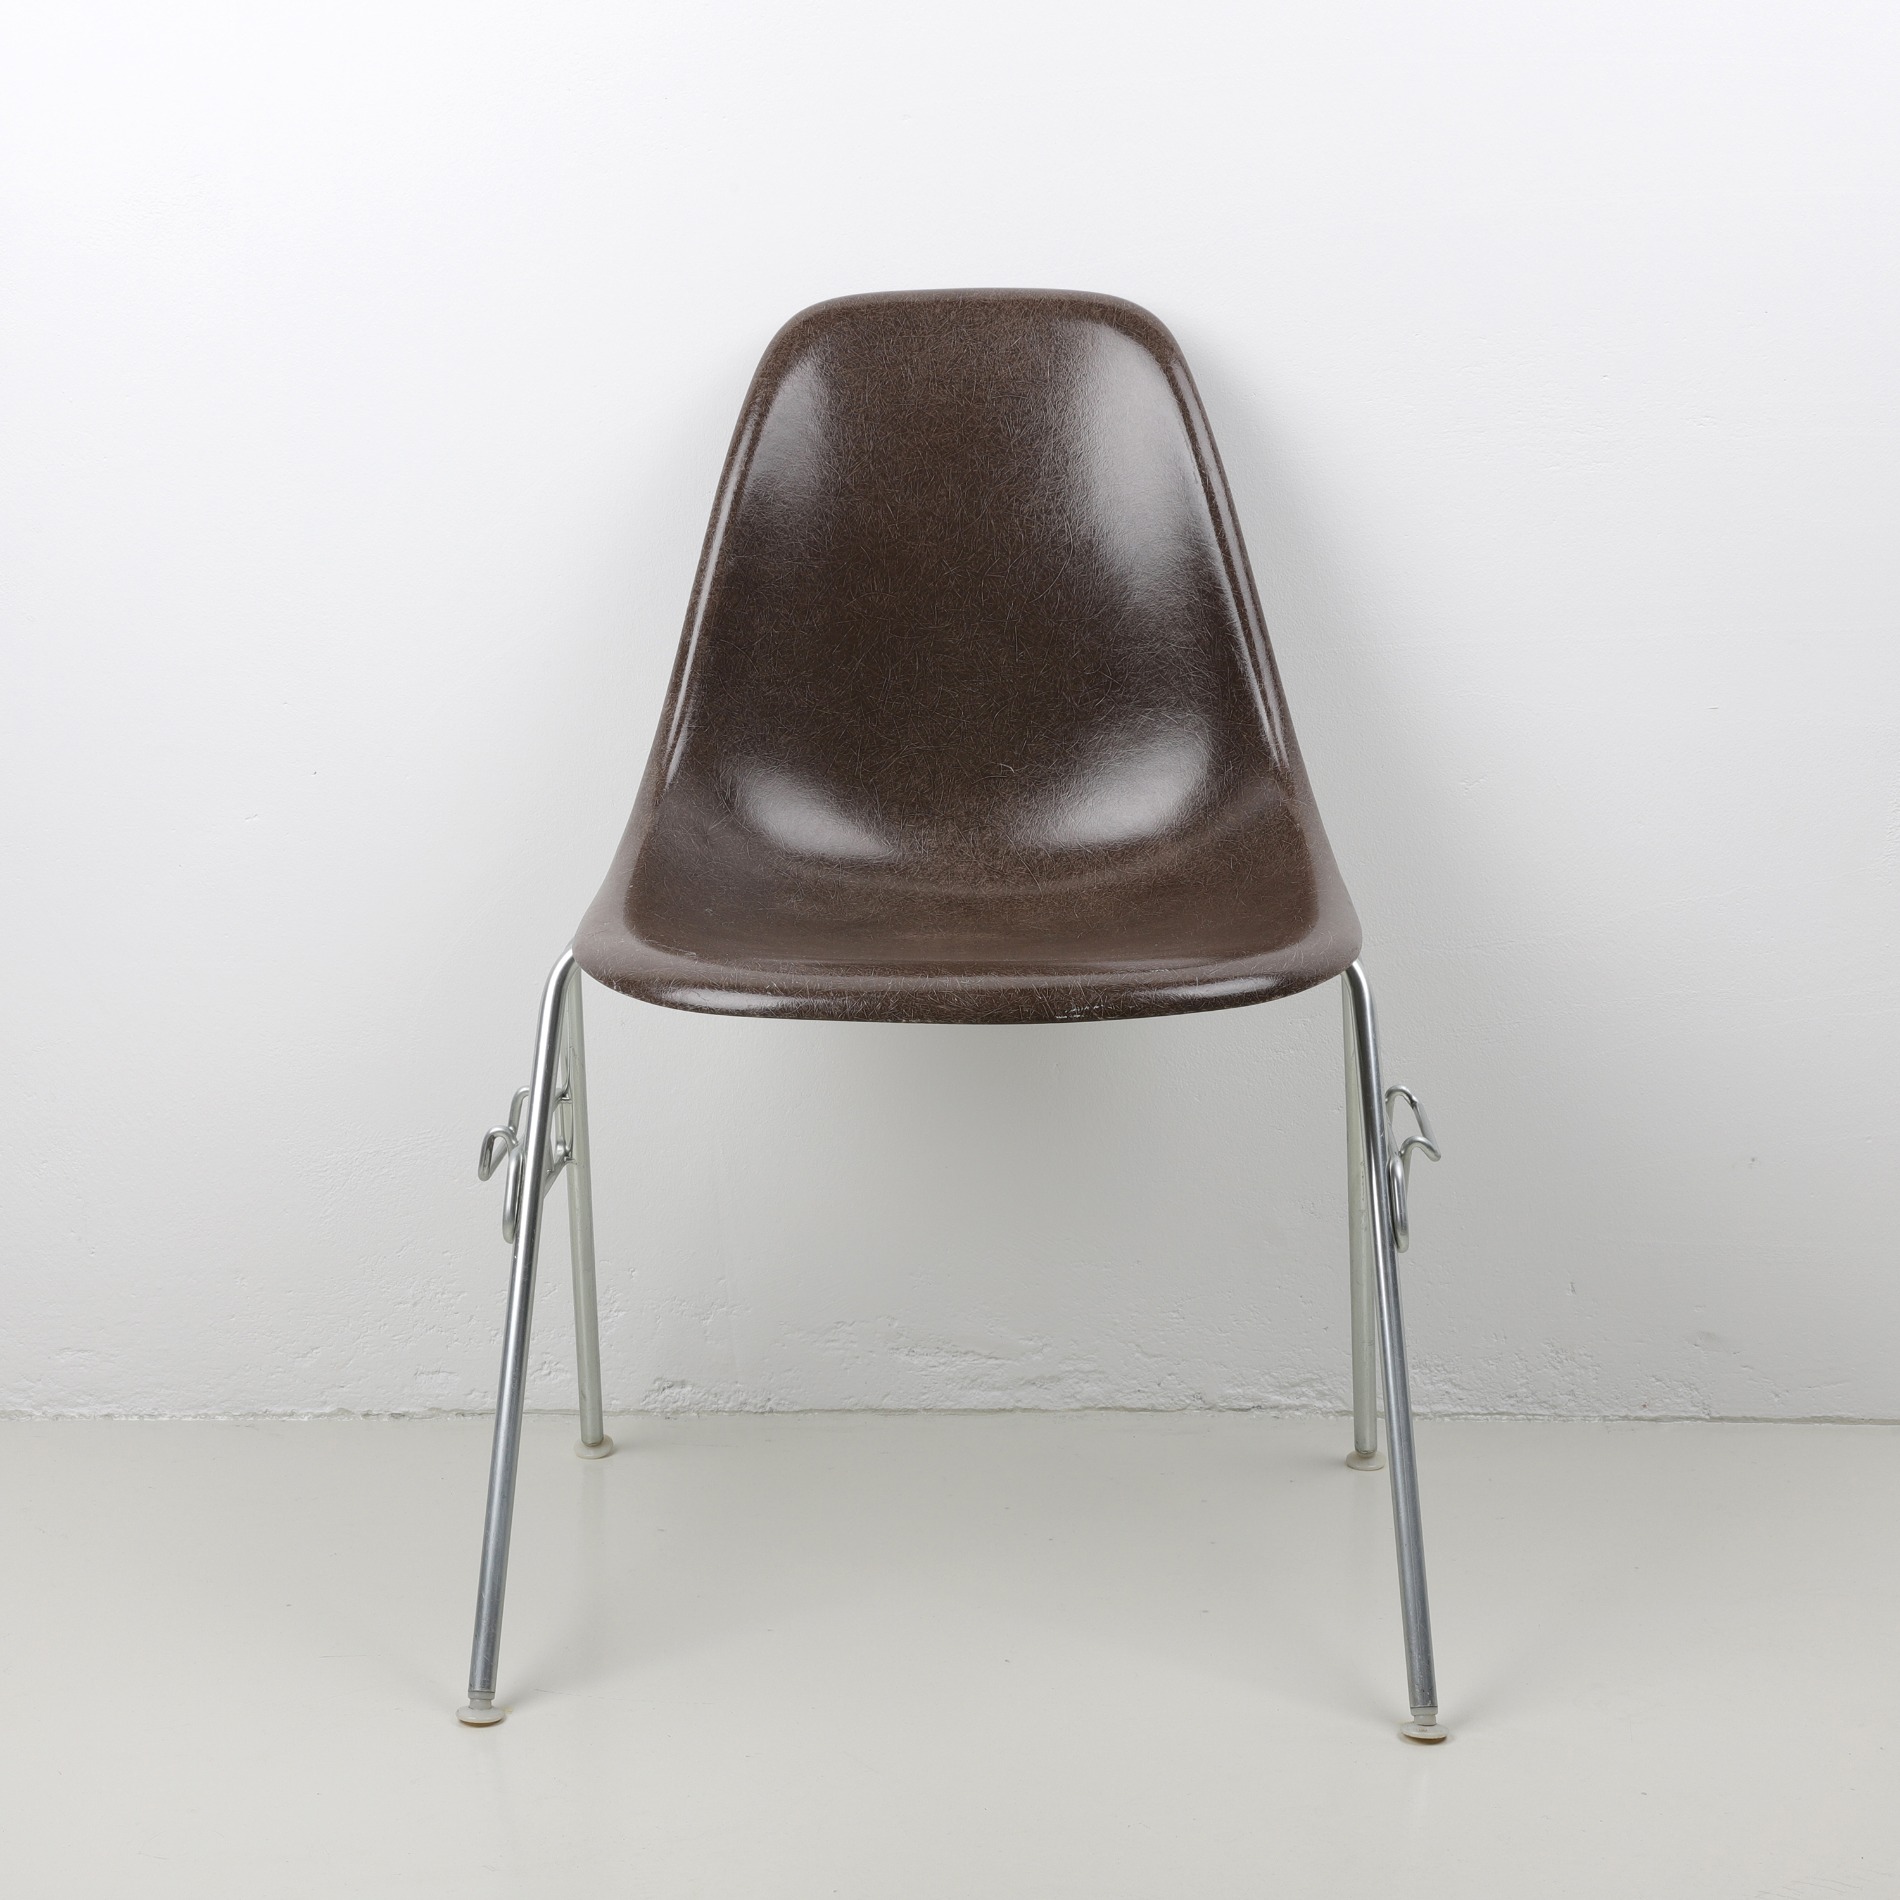 [임스체어] Eames Fiberglass Side Chair(DSS) - Seal brown